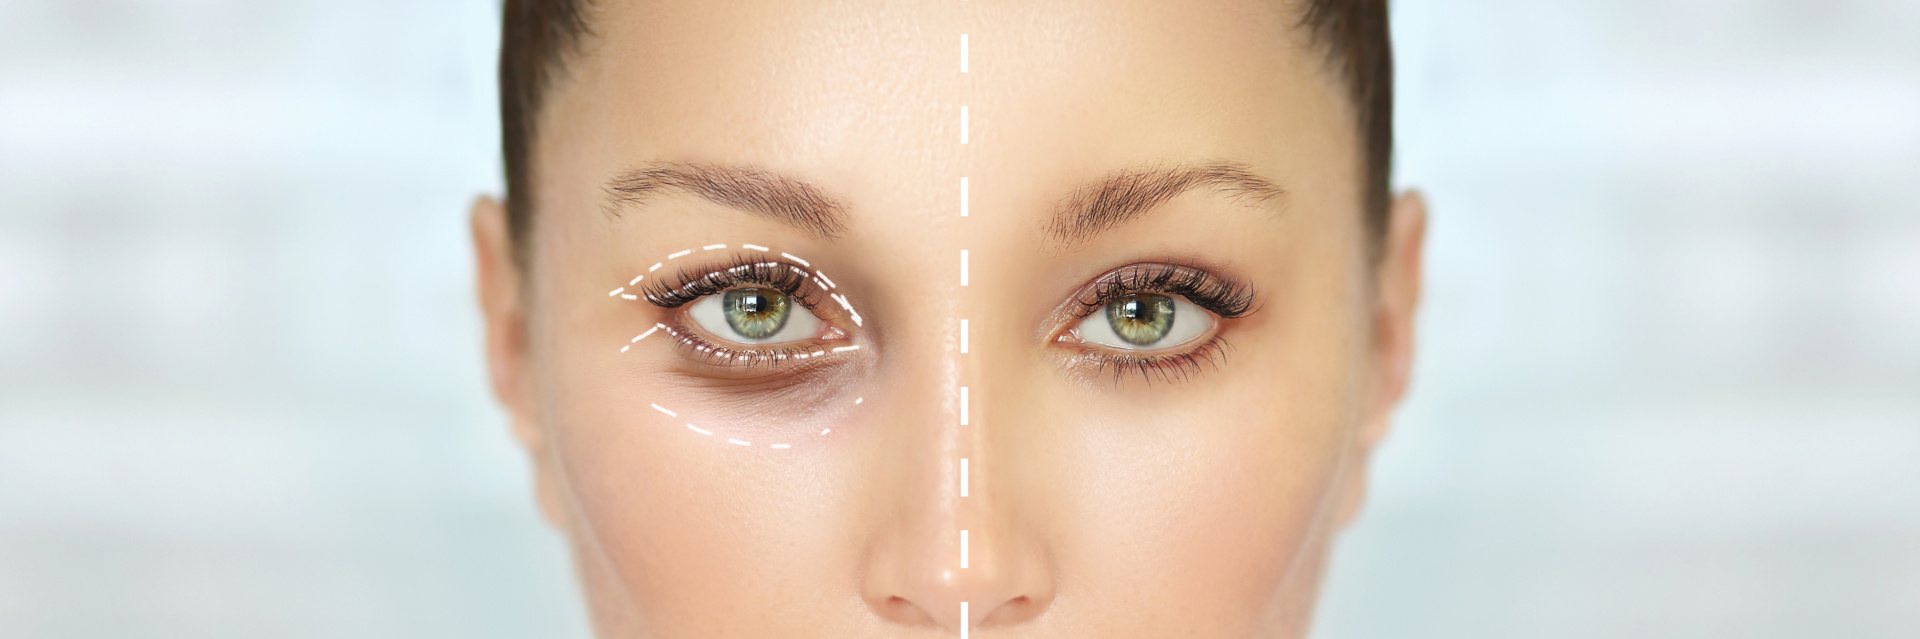 Sedm podrobných faktů o plastické operaci očních víček v MediEsté Clinic